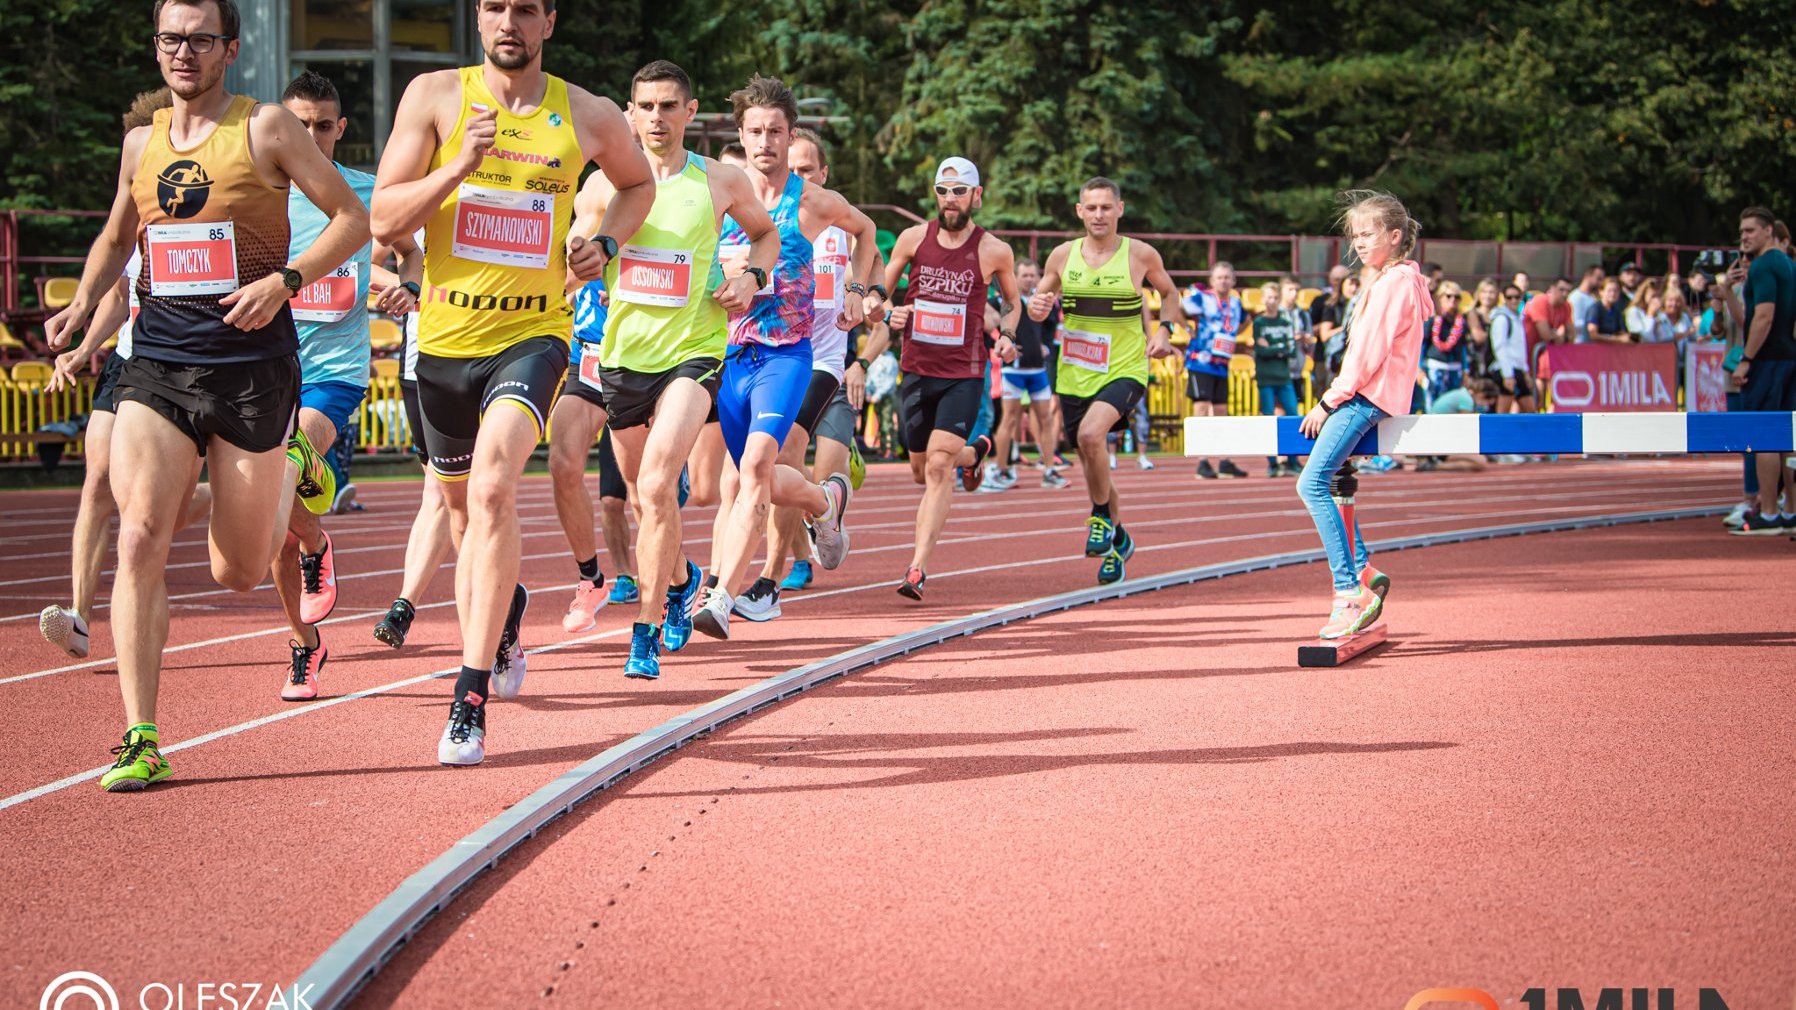 Galeria zdjęć przedstawia grupy biegaczy biegnących po bieżni.